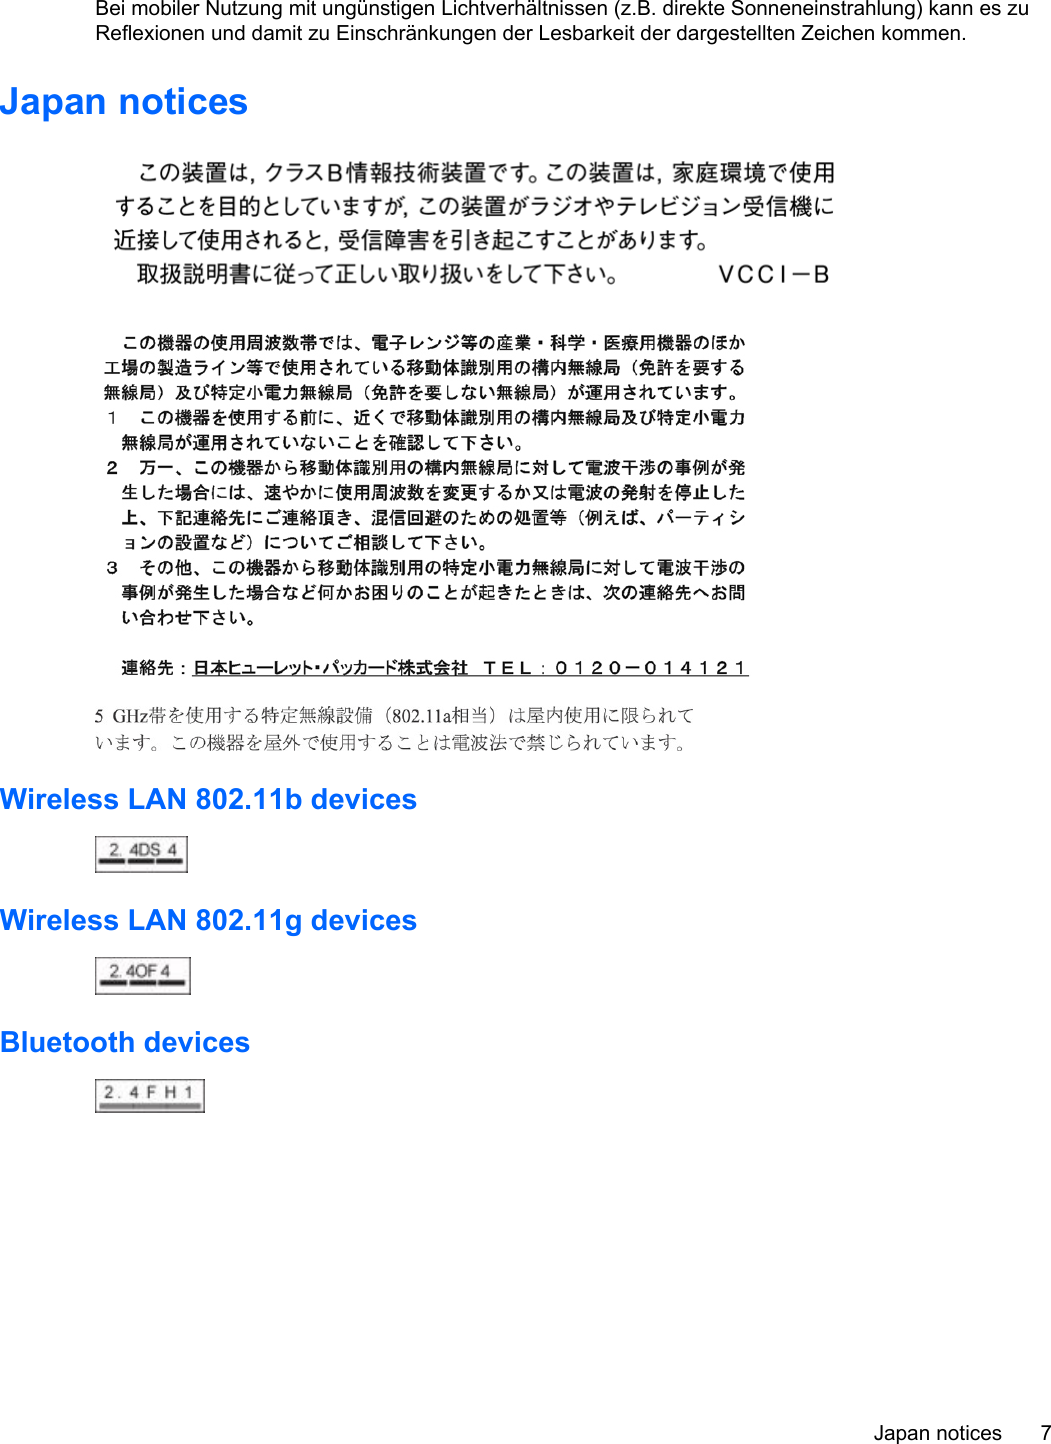 Bei mobiler Nutzung mit ungünstigen Lichtverhältnissen (z.B. direkte Sonneneinstrahlung) kann es zuReflexionen und damit zu Einschränkungen der Lesbarkeit der dargestellten Zeichen kommen.Japan noticesWireless LAN 802.11b devicesWireless LAN 802.11g devicesBluetooth devicesJapan notices 7